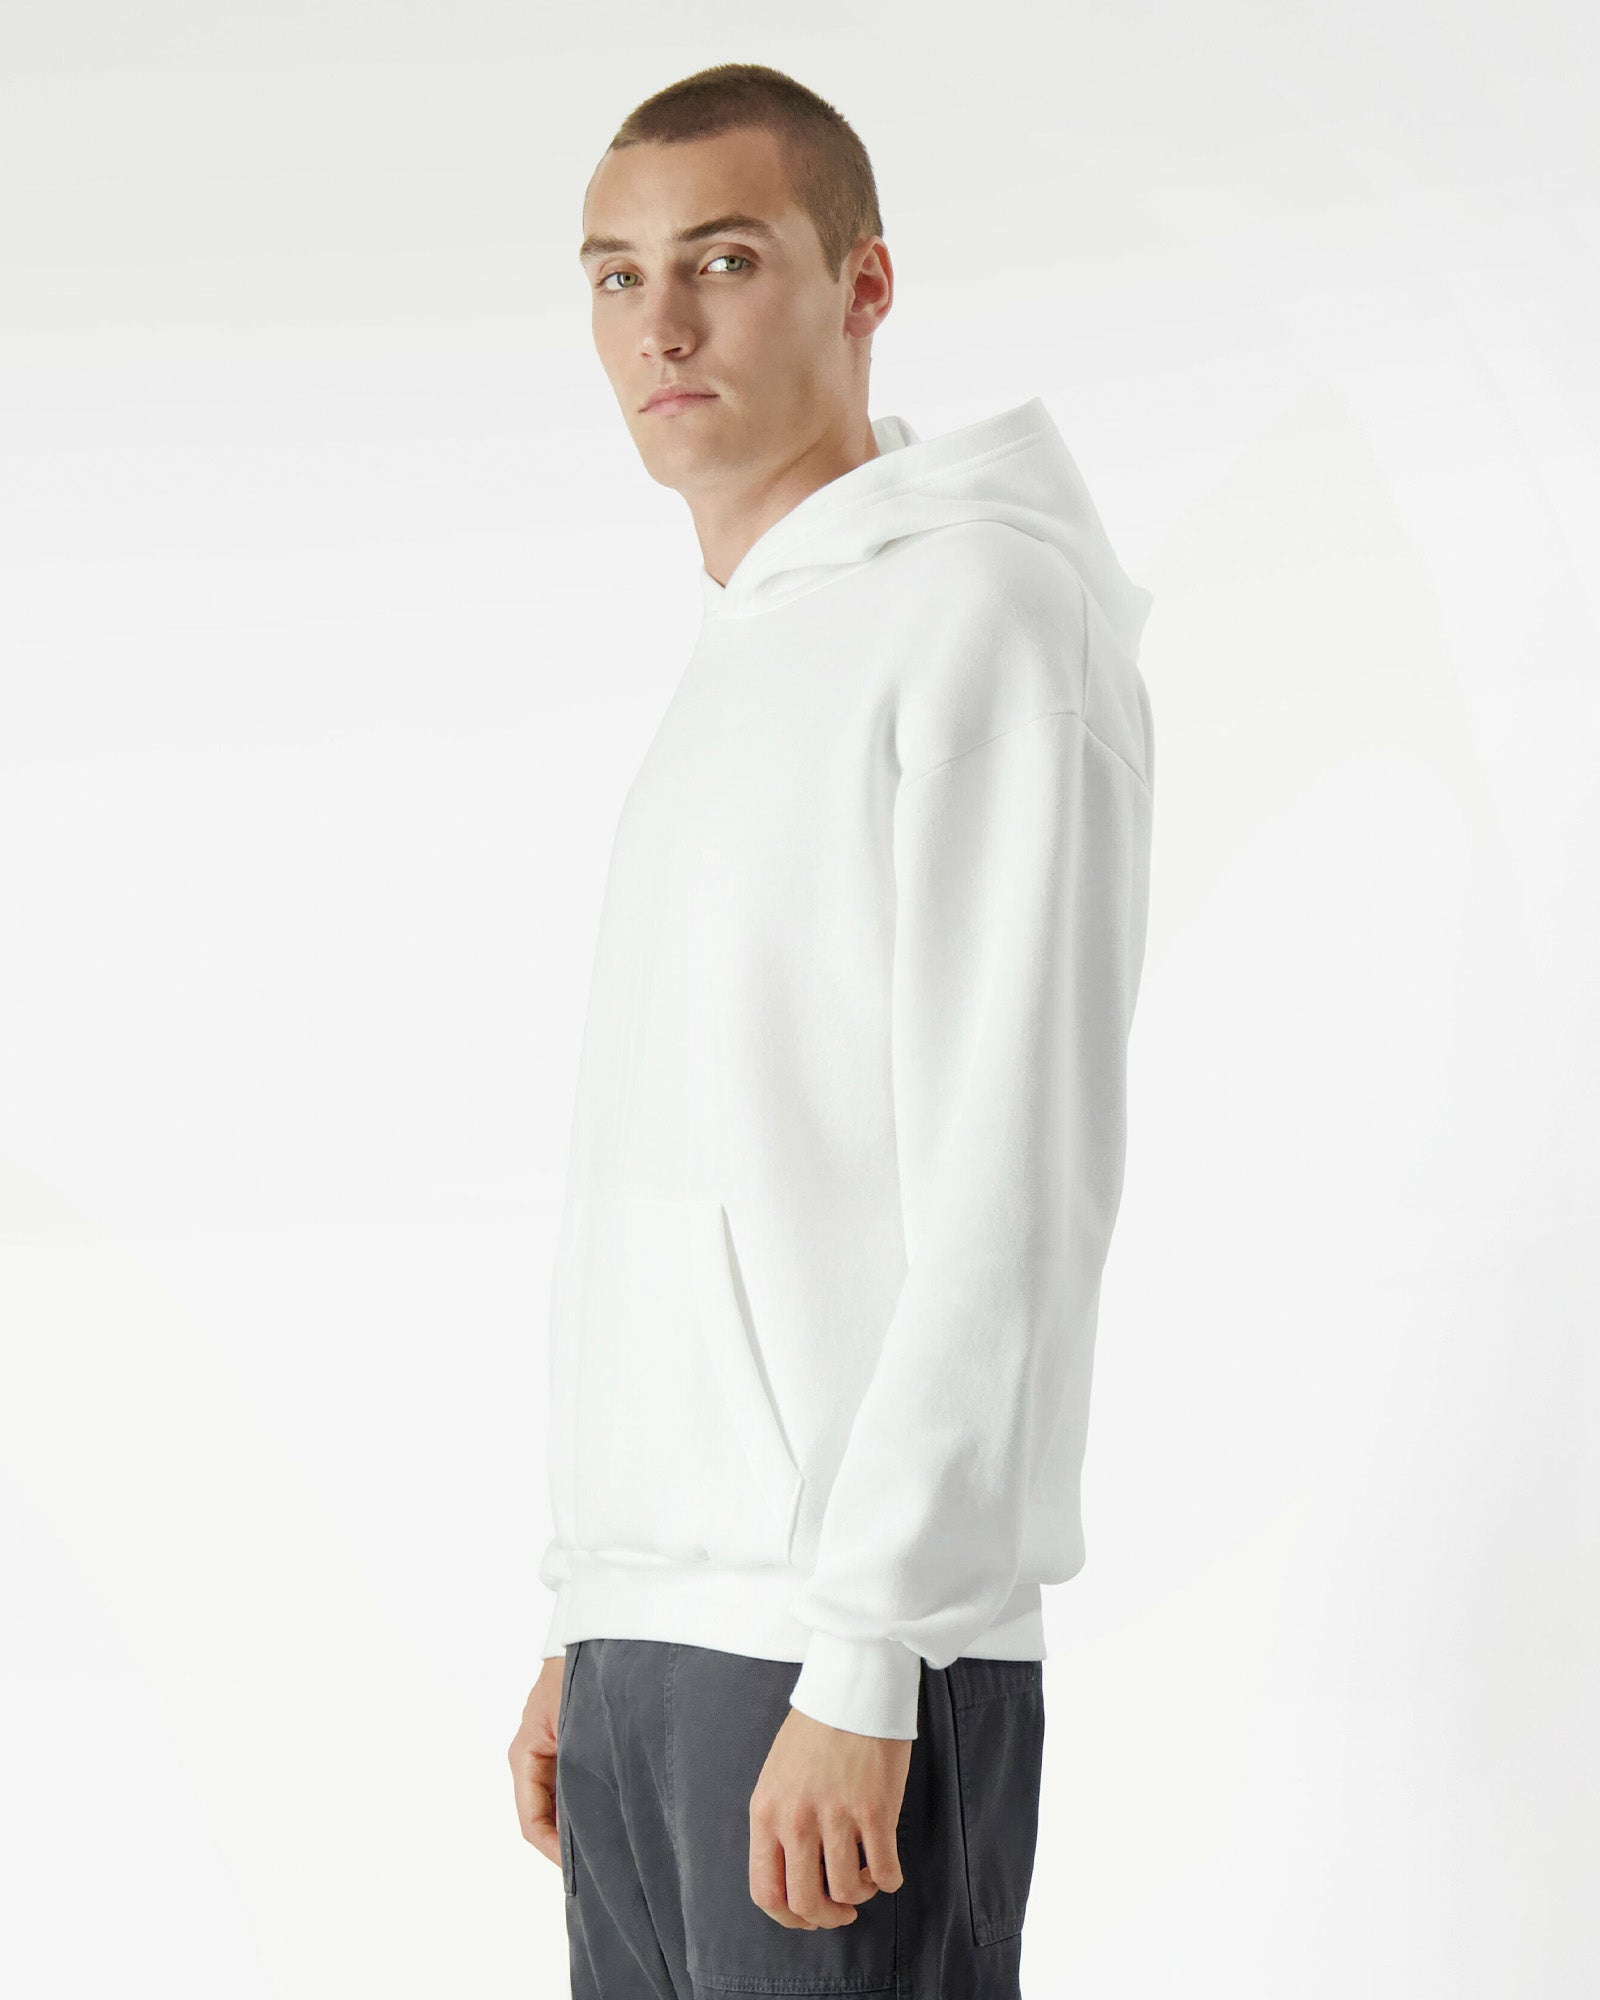 Reflex Unisex Hooded Sweatshirt - White